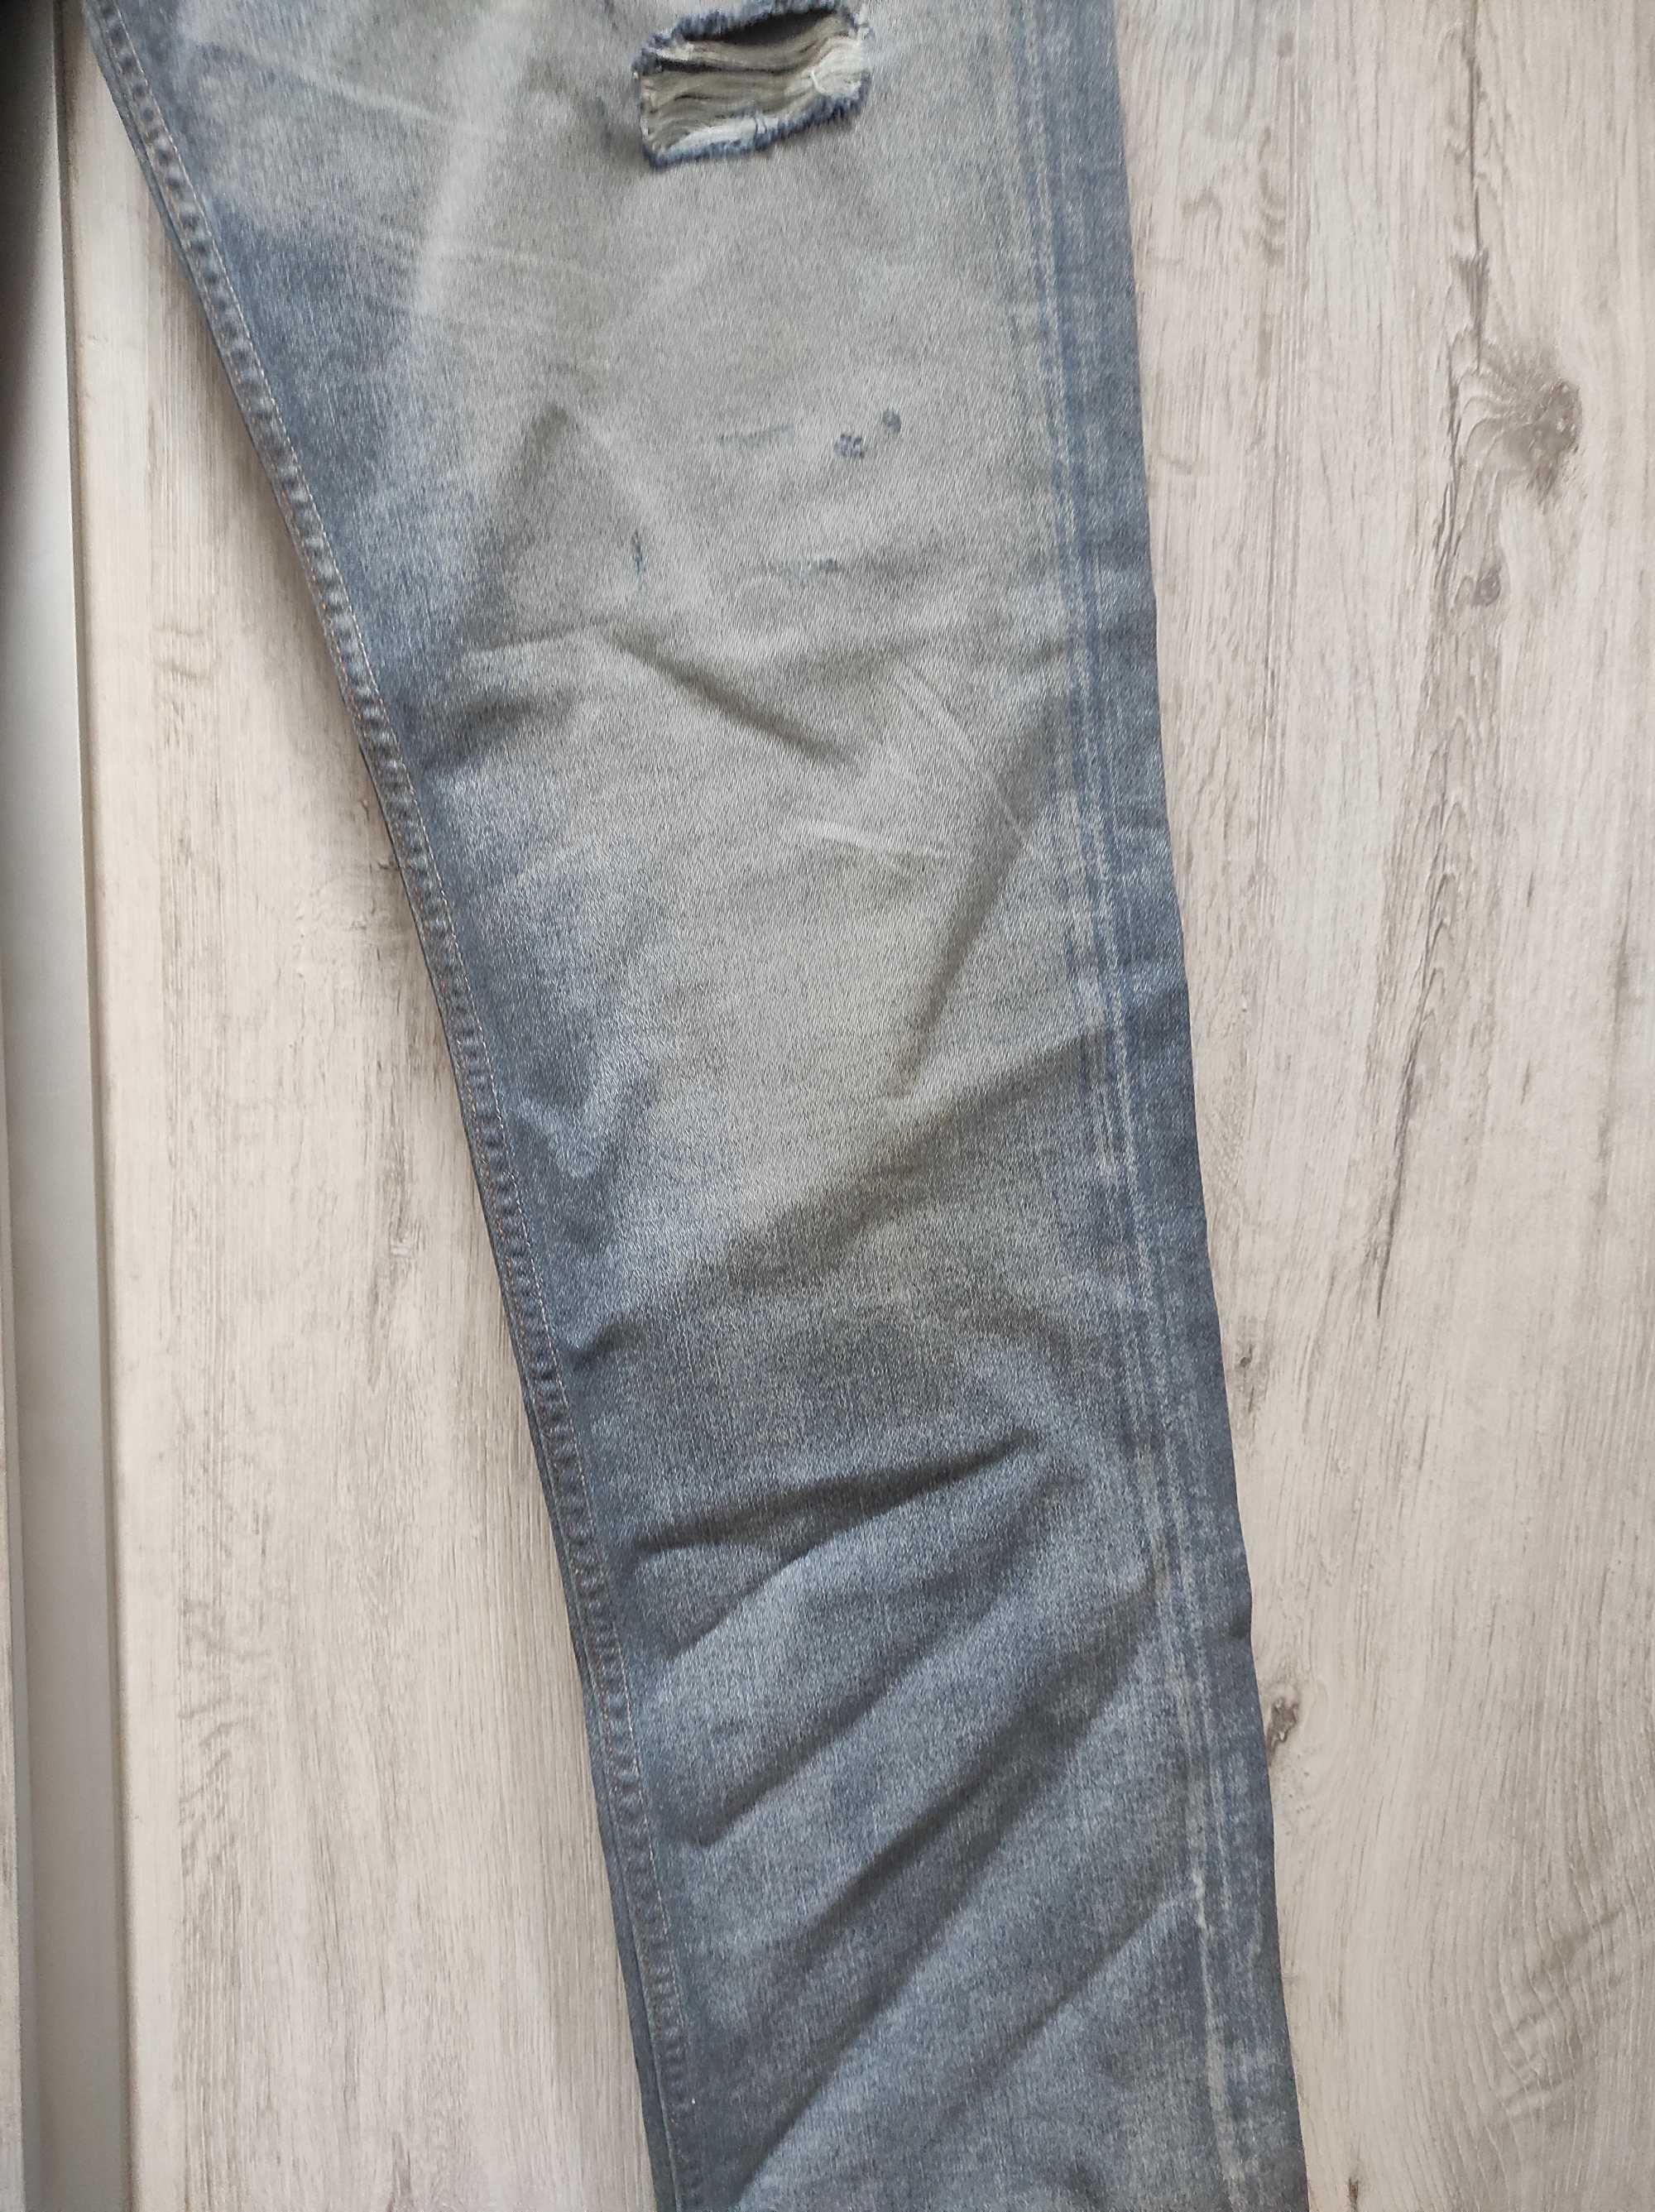 Spodnie Męskie Dżinsowe Jeansowe WRANGLER BEN Rozmiar W32 L34